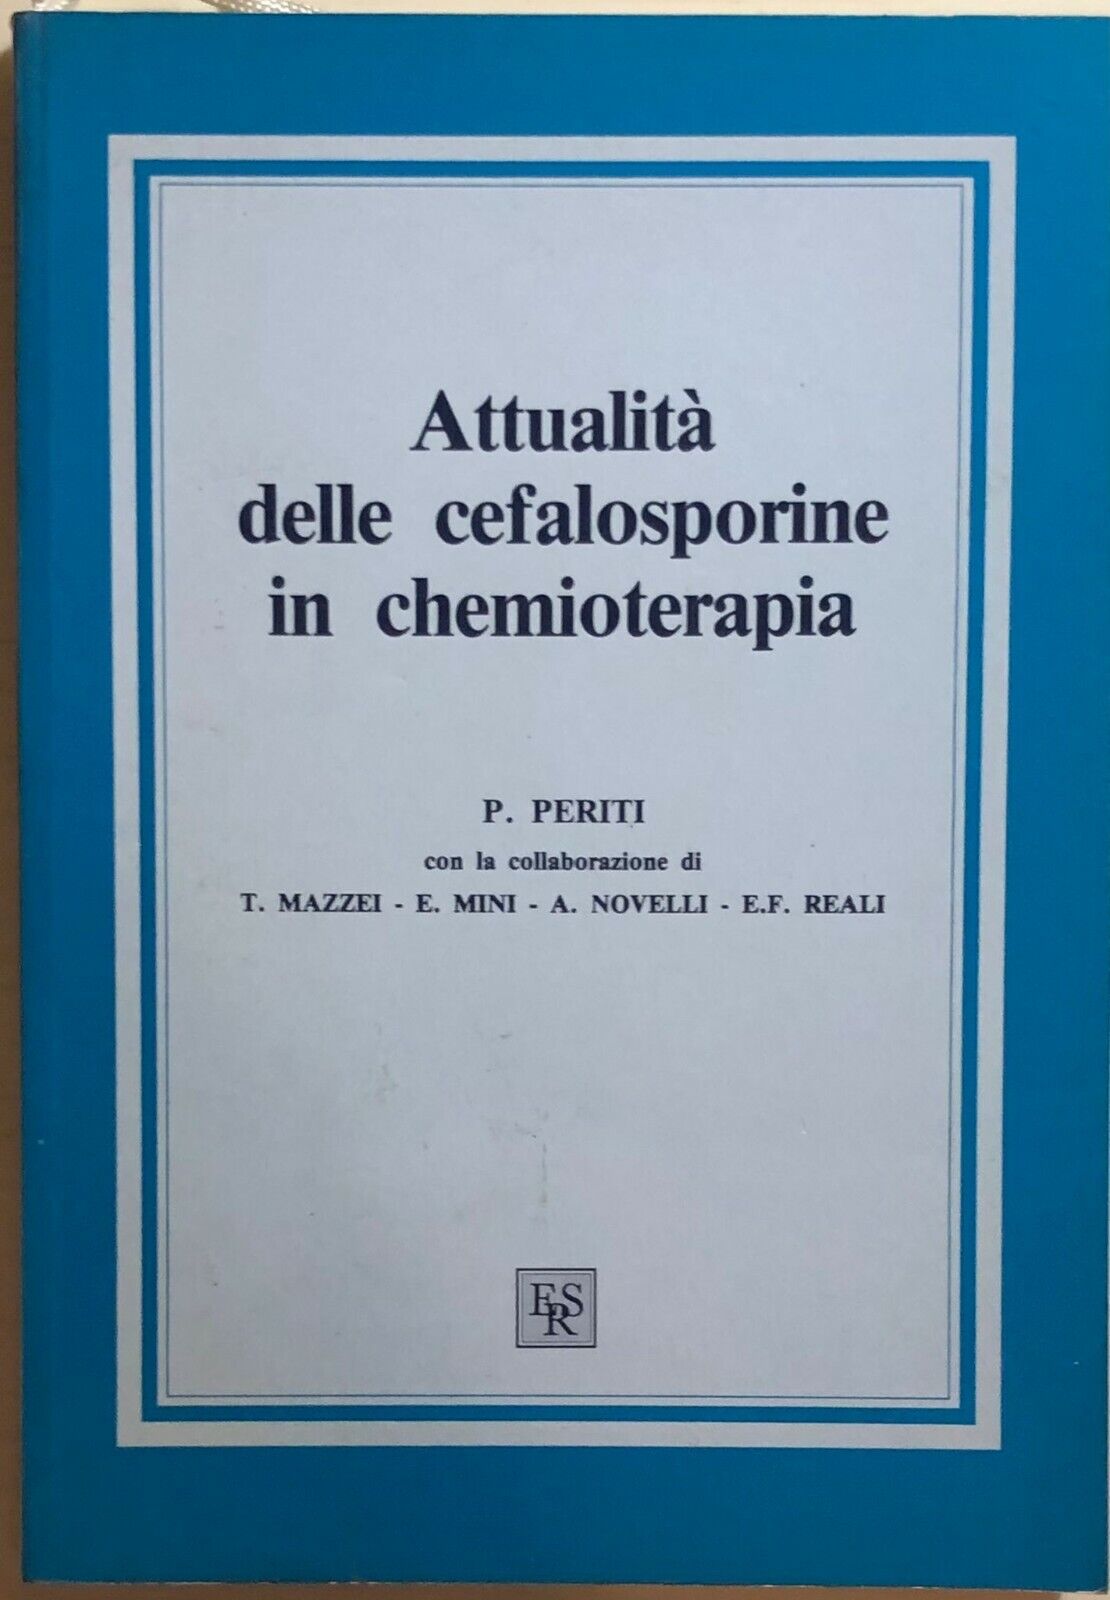 Attualit? delle cefalosporine in chemioterapia di P.Periti, 1988, Edizioni Rivis